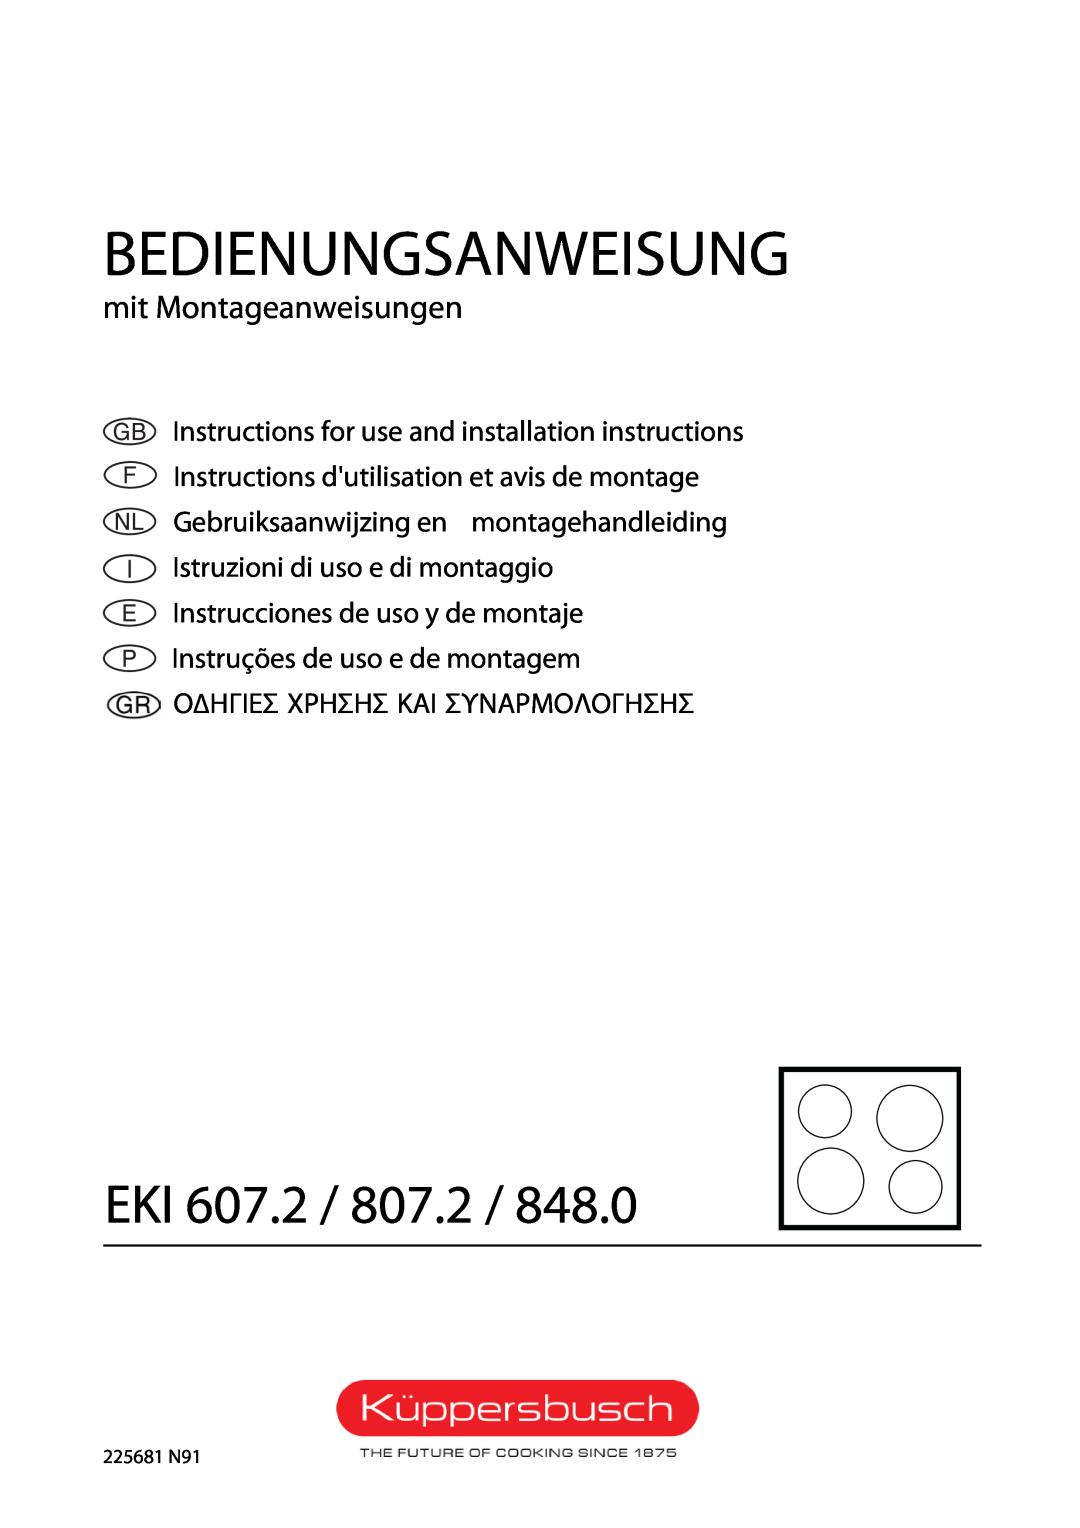 Kuppersbusch USA EKI 848.0 installation instructions Bedienungsanweisung, Eki, mit Montageanweisungen, 225681 N91 